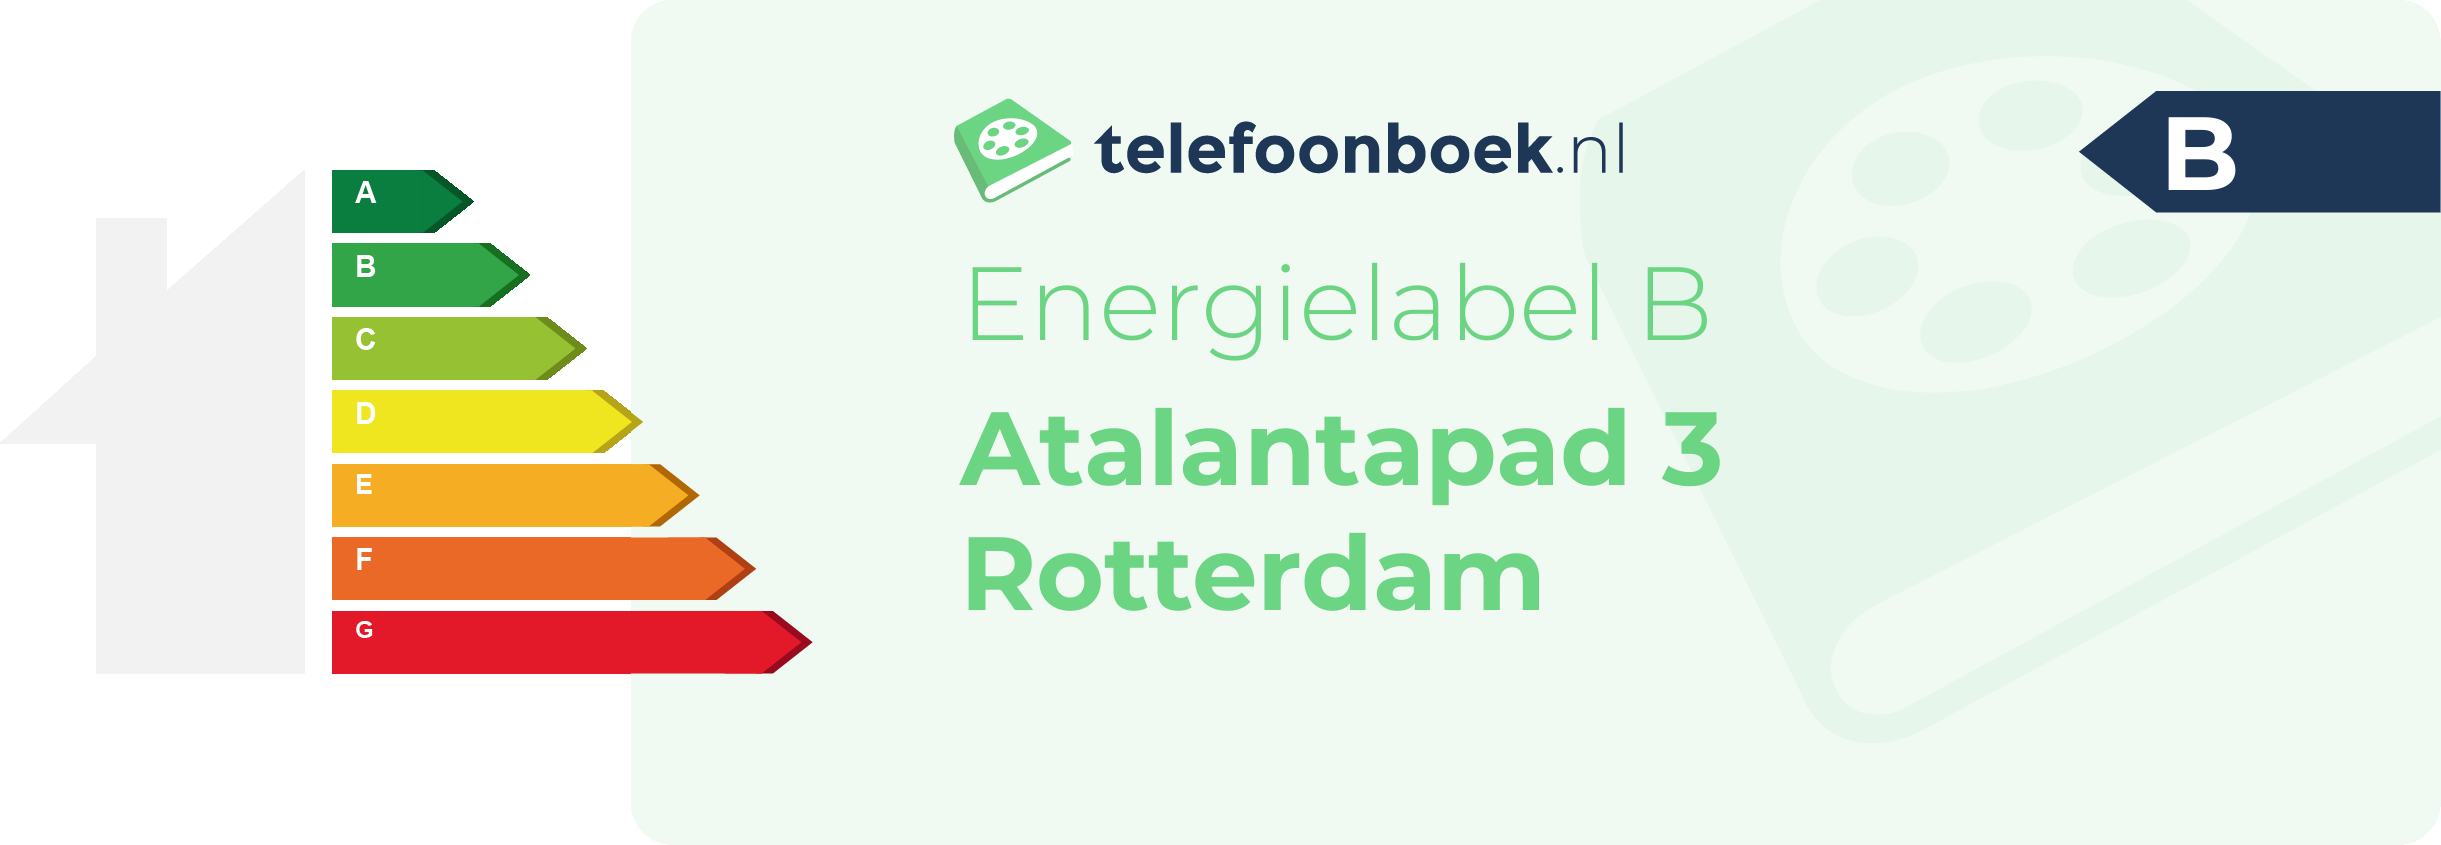 Energielabel Atalantapad 3 Rotterdam